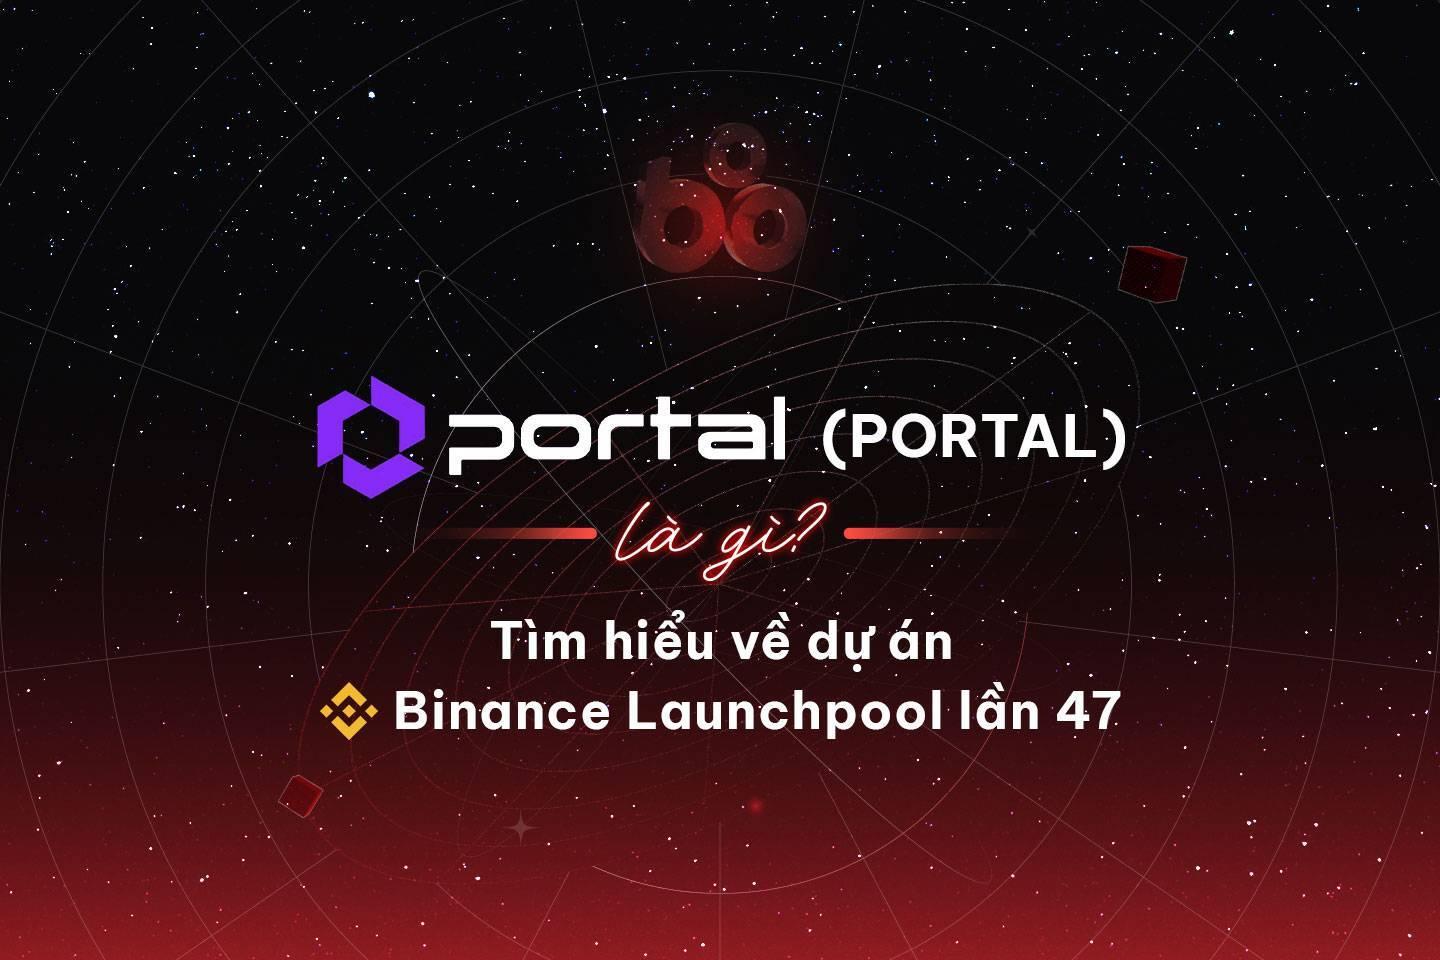 portal-portal-la-gi-tim-hieu-ve-du-an-binance-launchpool-lan-47